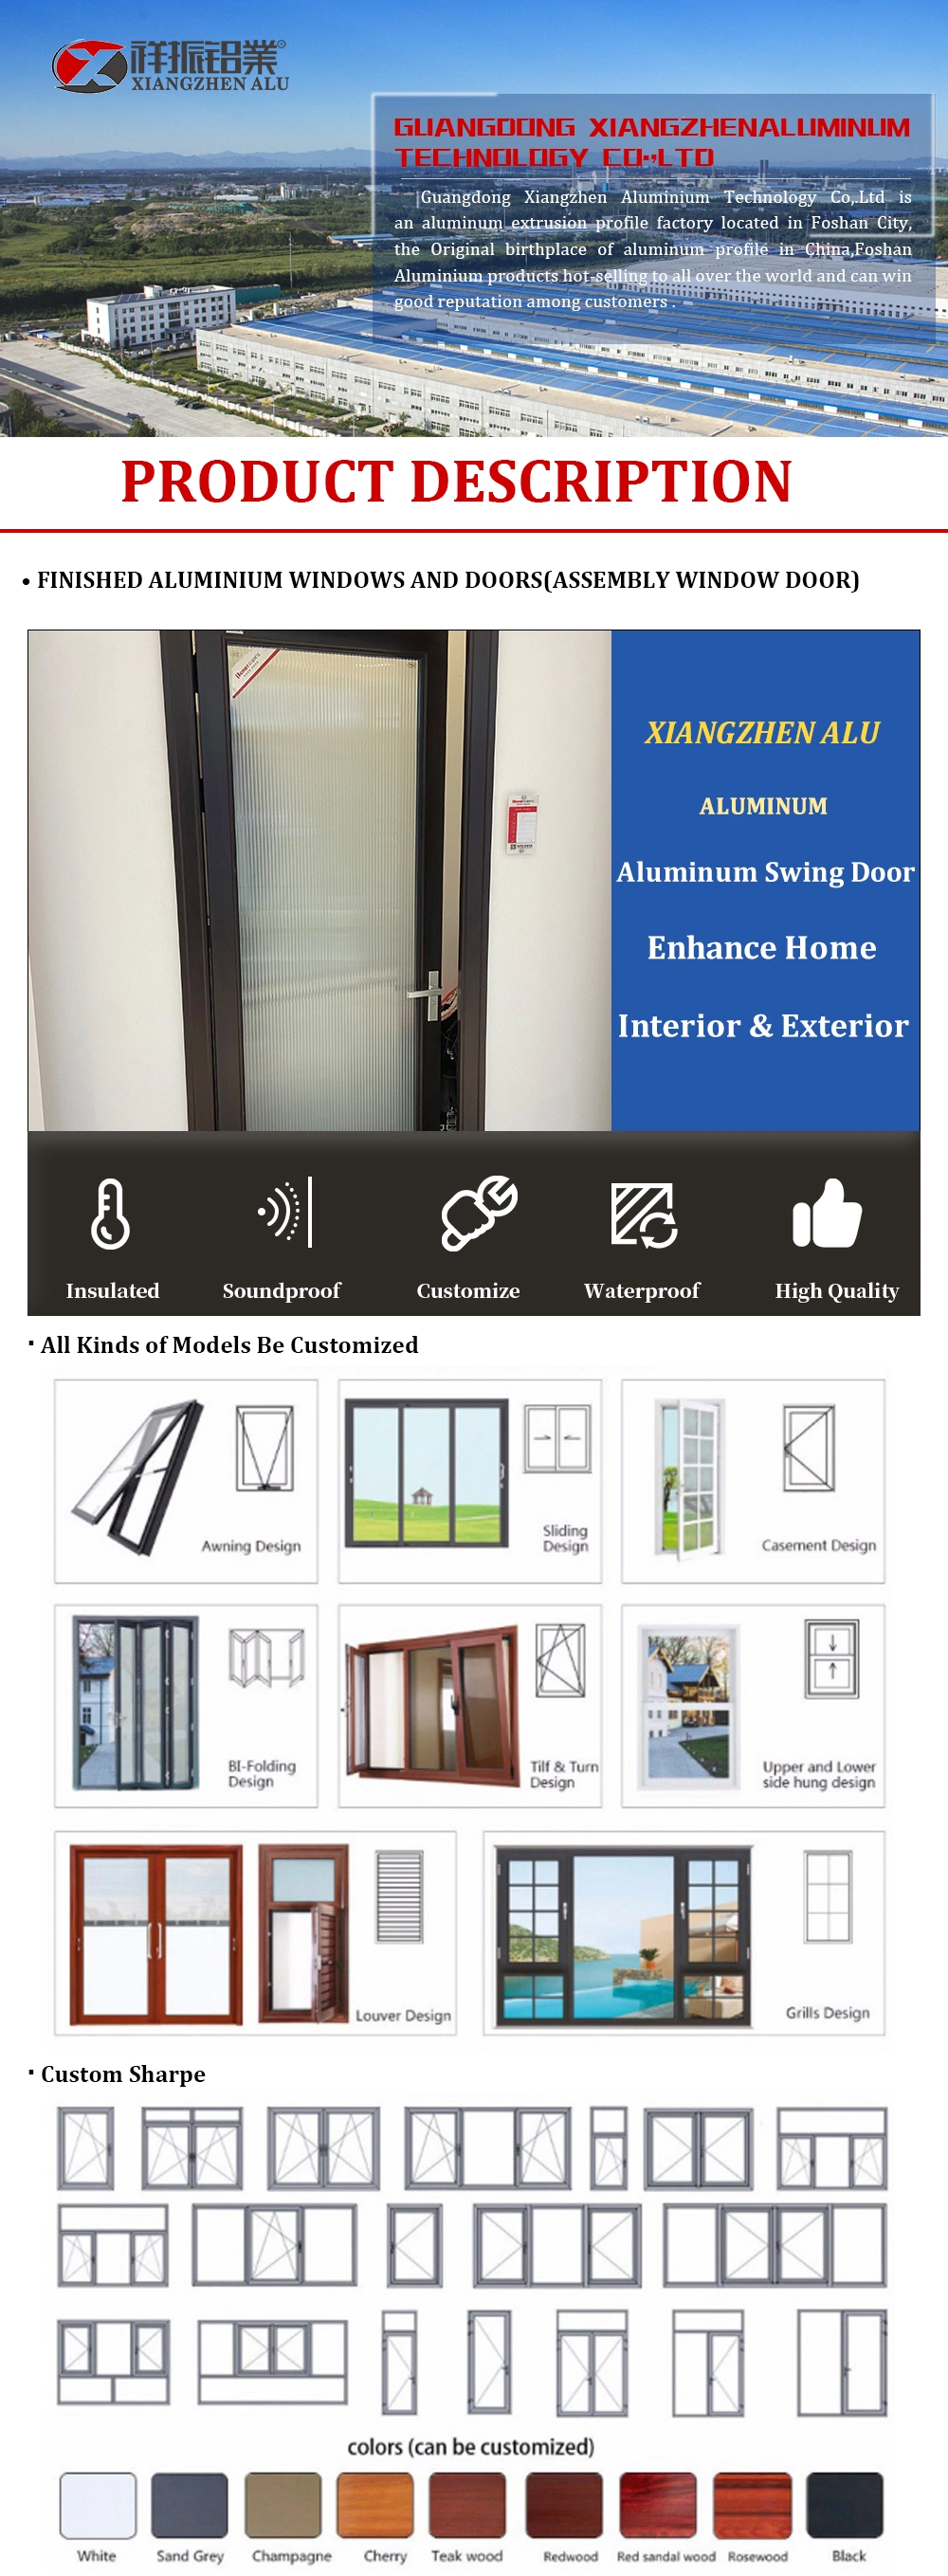 Aluminum Metal Door with Tempered Glass Hinged Waterproof Aluminium Interior French Door and Bathroom Swing Doors